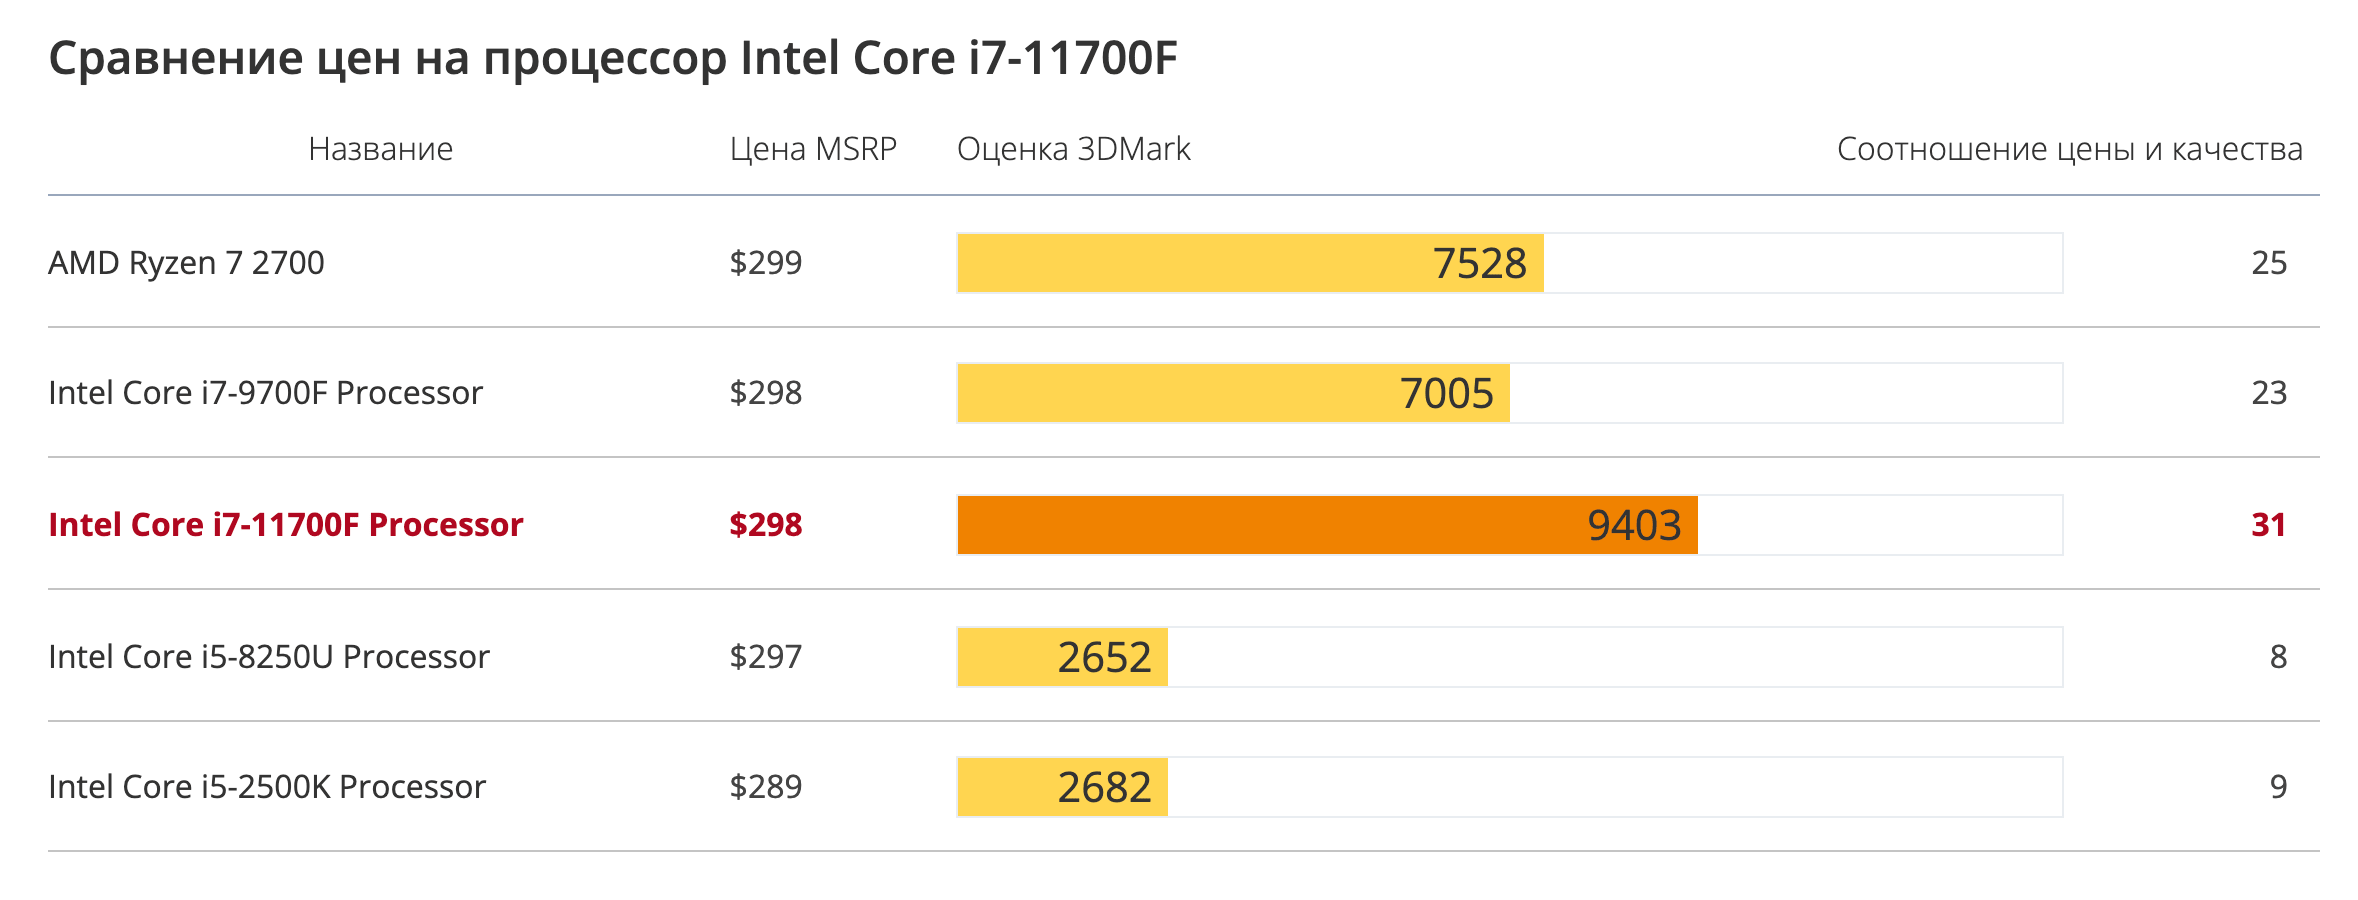 Сравнение цен на процессор Intel Core i7-11700F